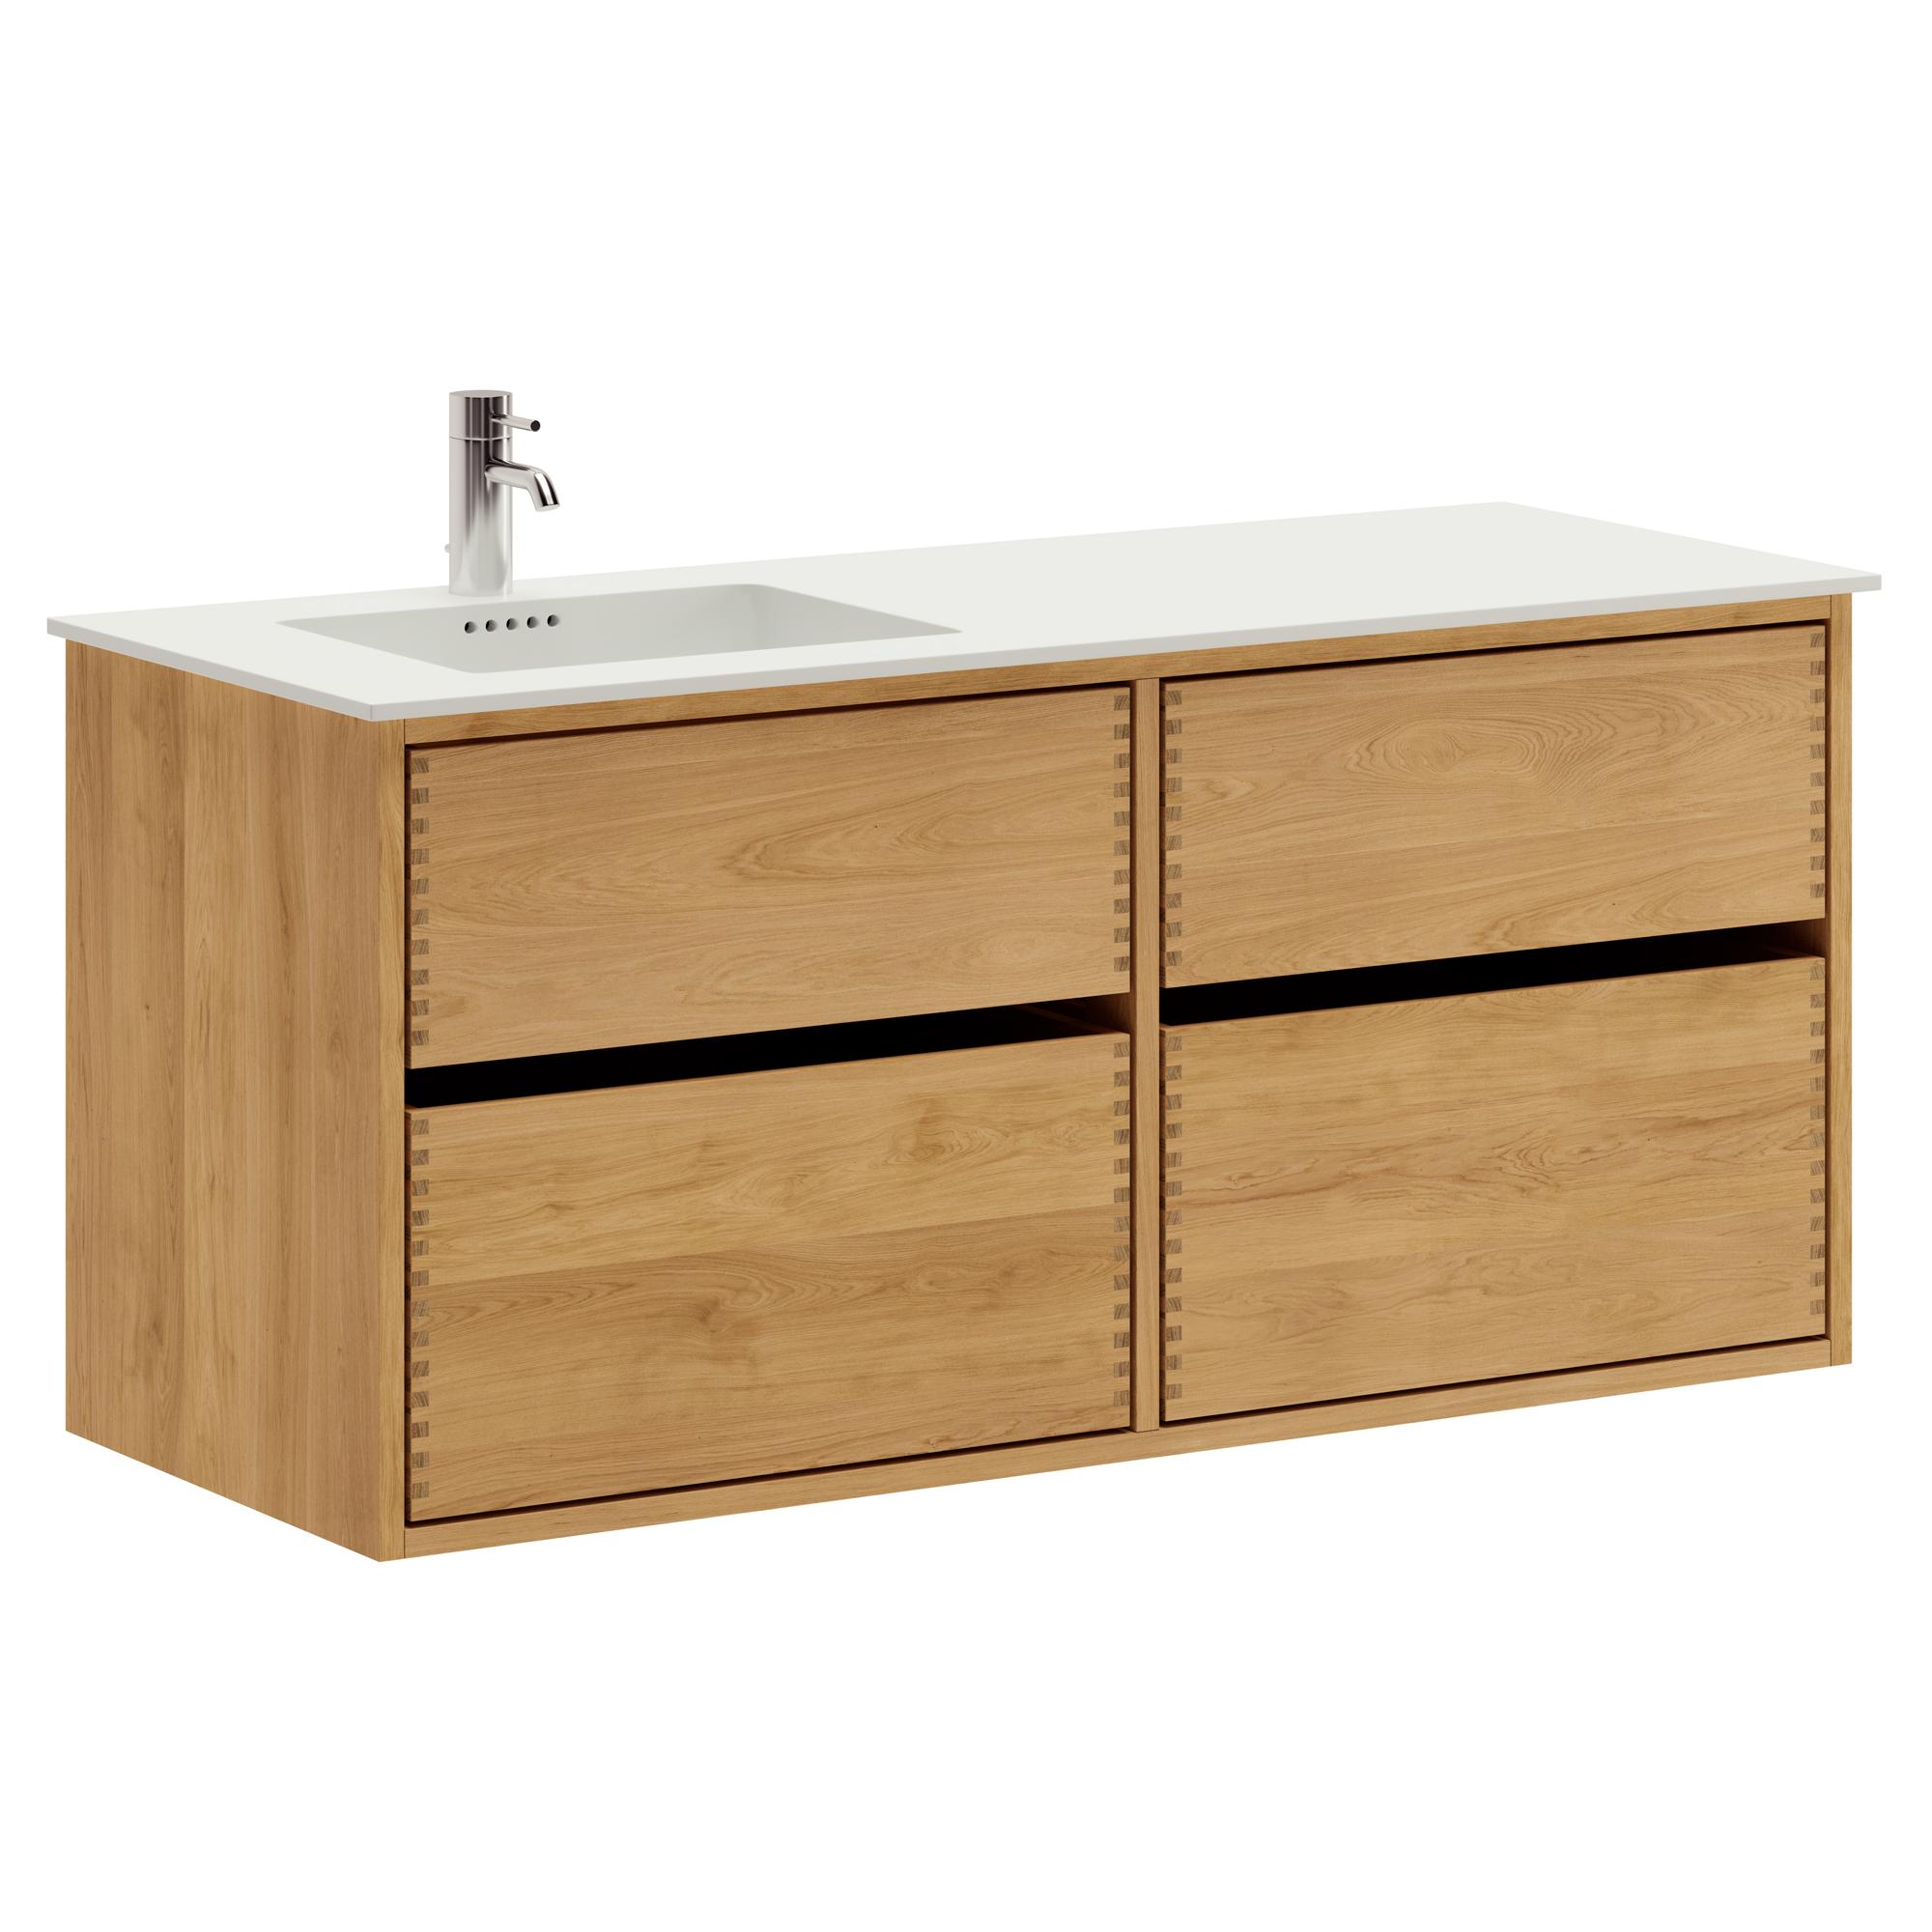 120 cm Just Wood Original Badezimmermöbel mit 4 Schubladen und Solid Surface-Waschbecken - Links